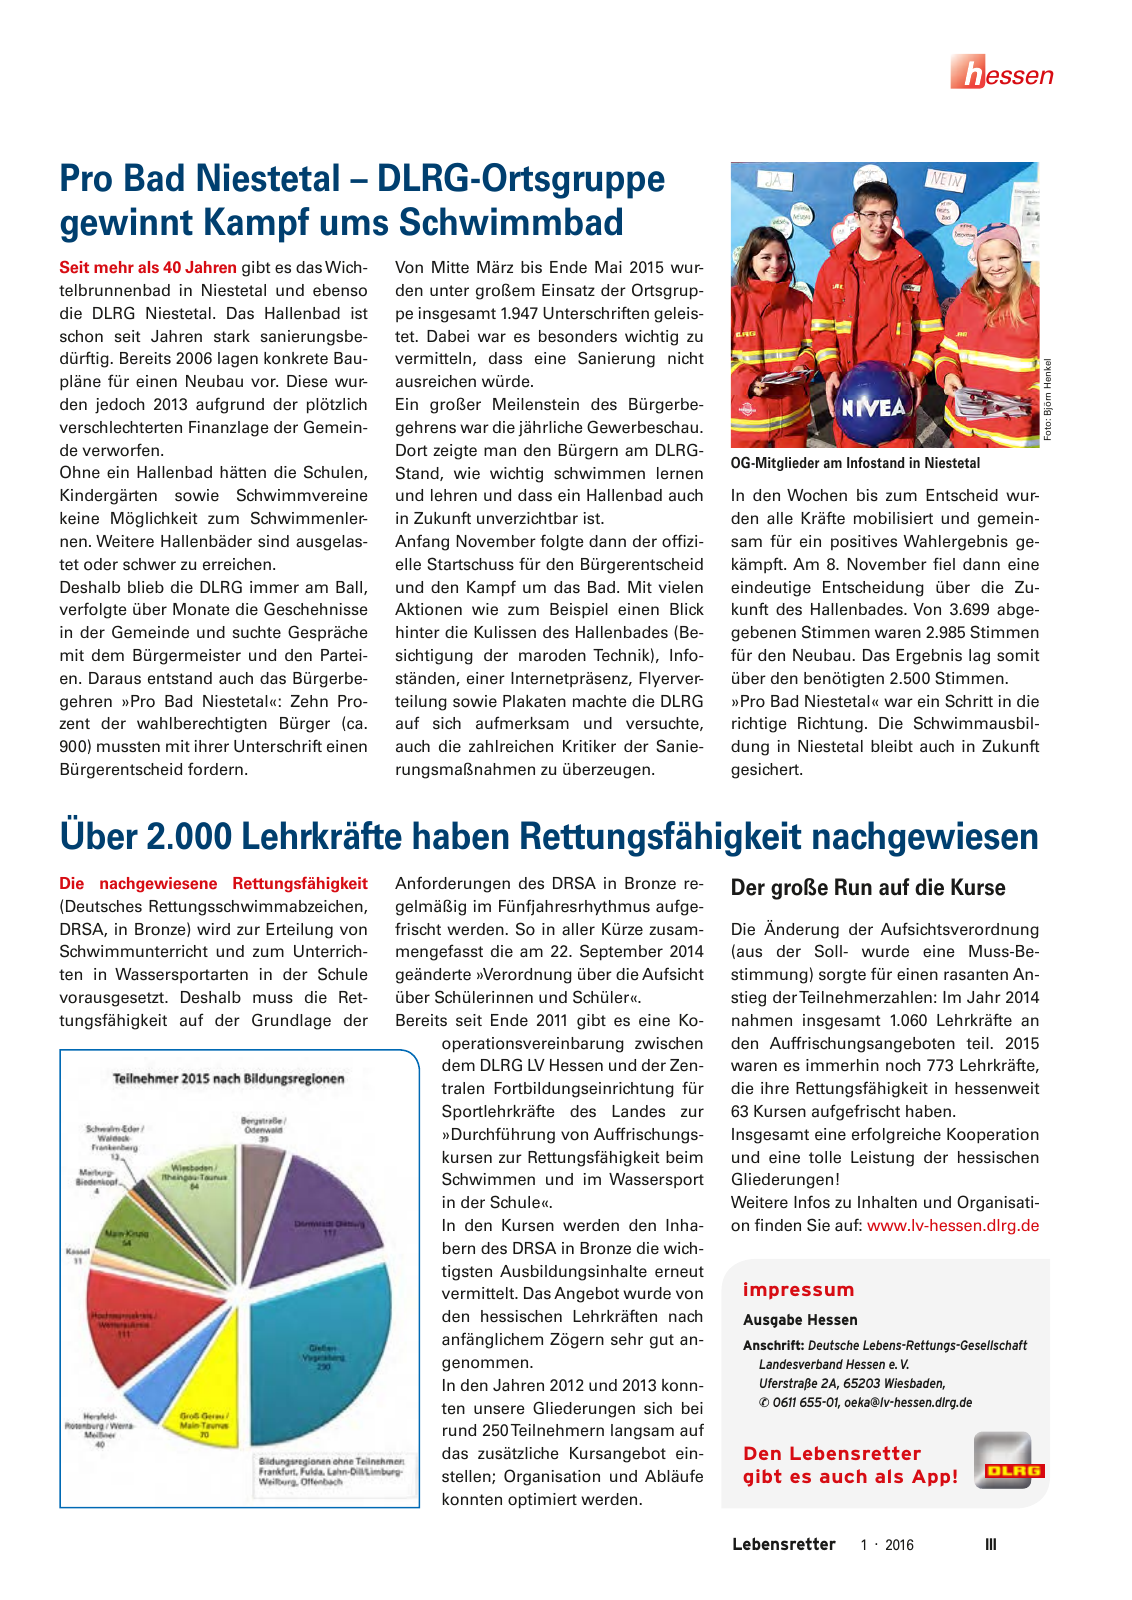 Vorschau Lebensretter 1/2016 - Regionalausgabe Hessen Seite 5